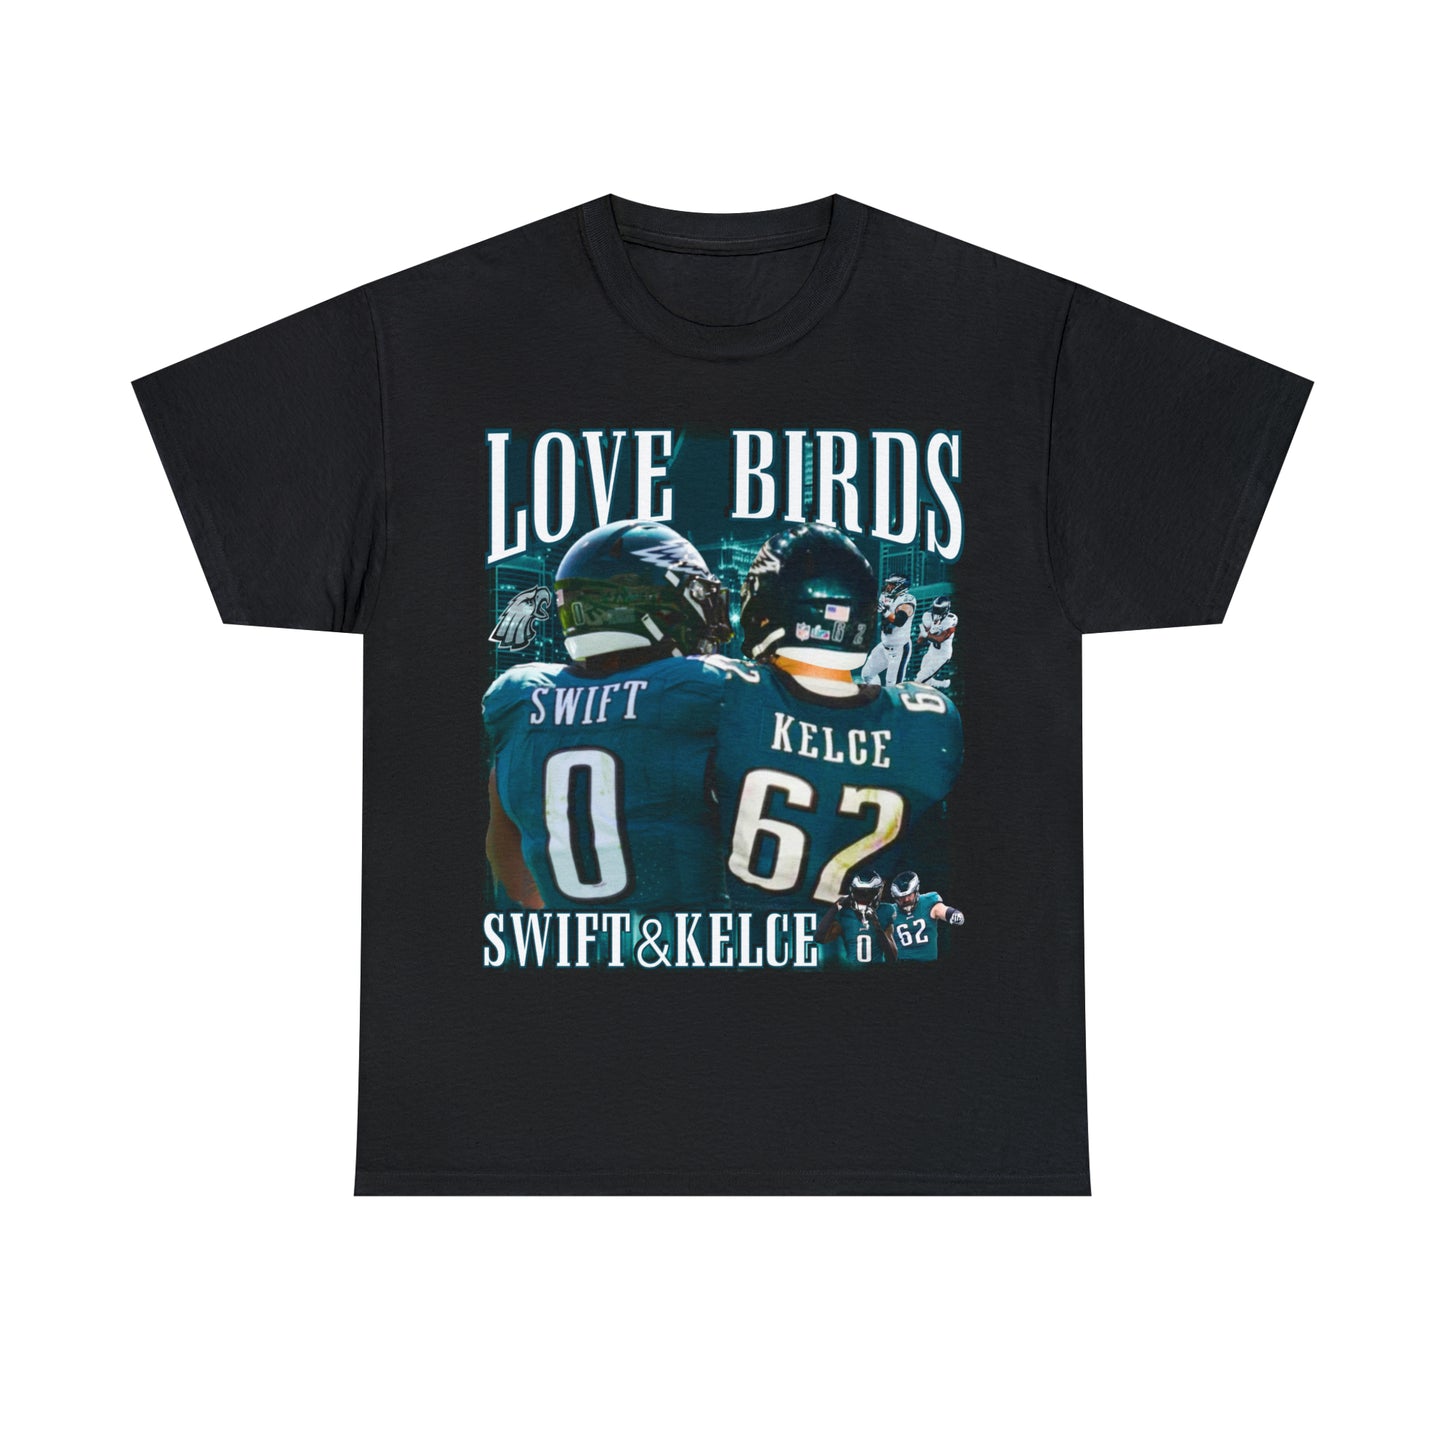 LOVE BIRDS SWIFT & KELCE